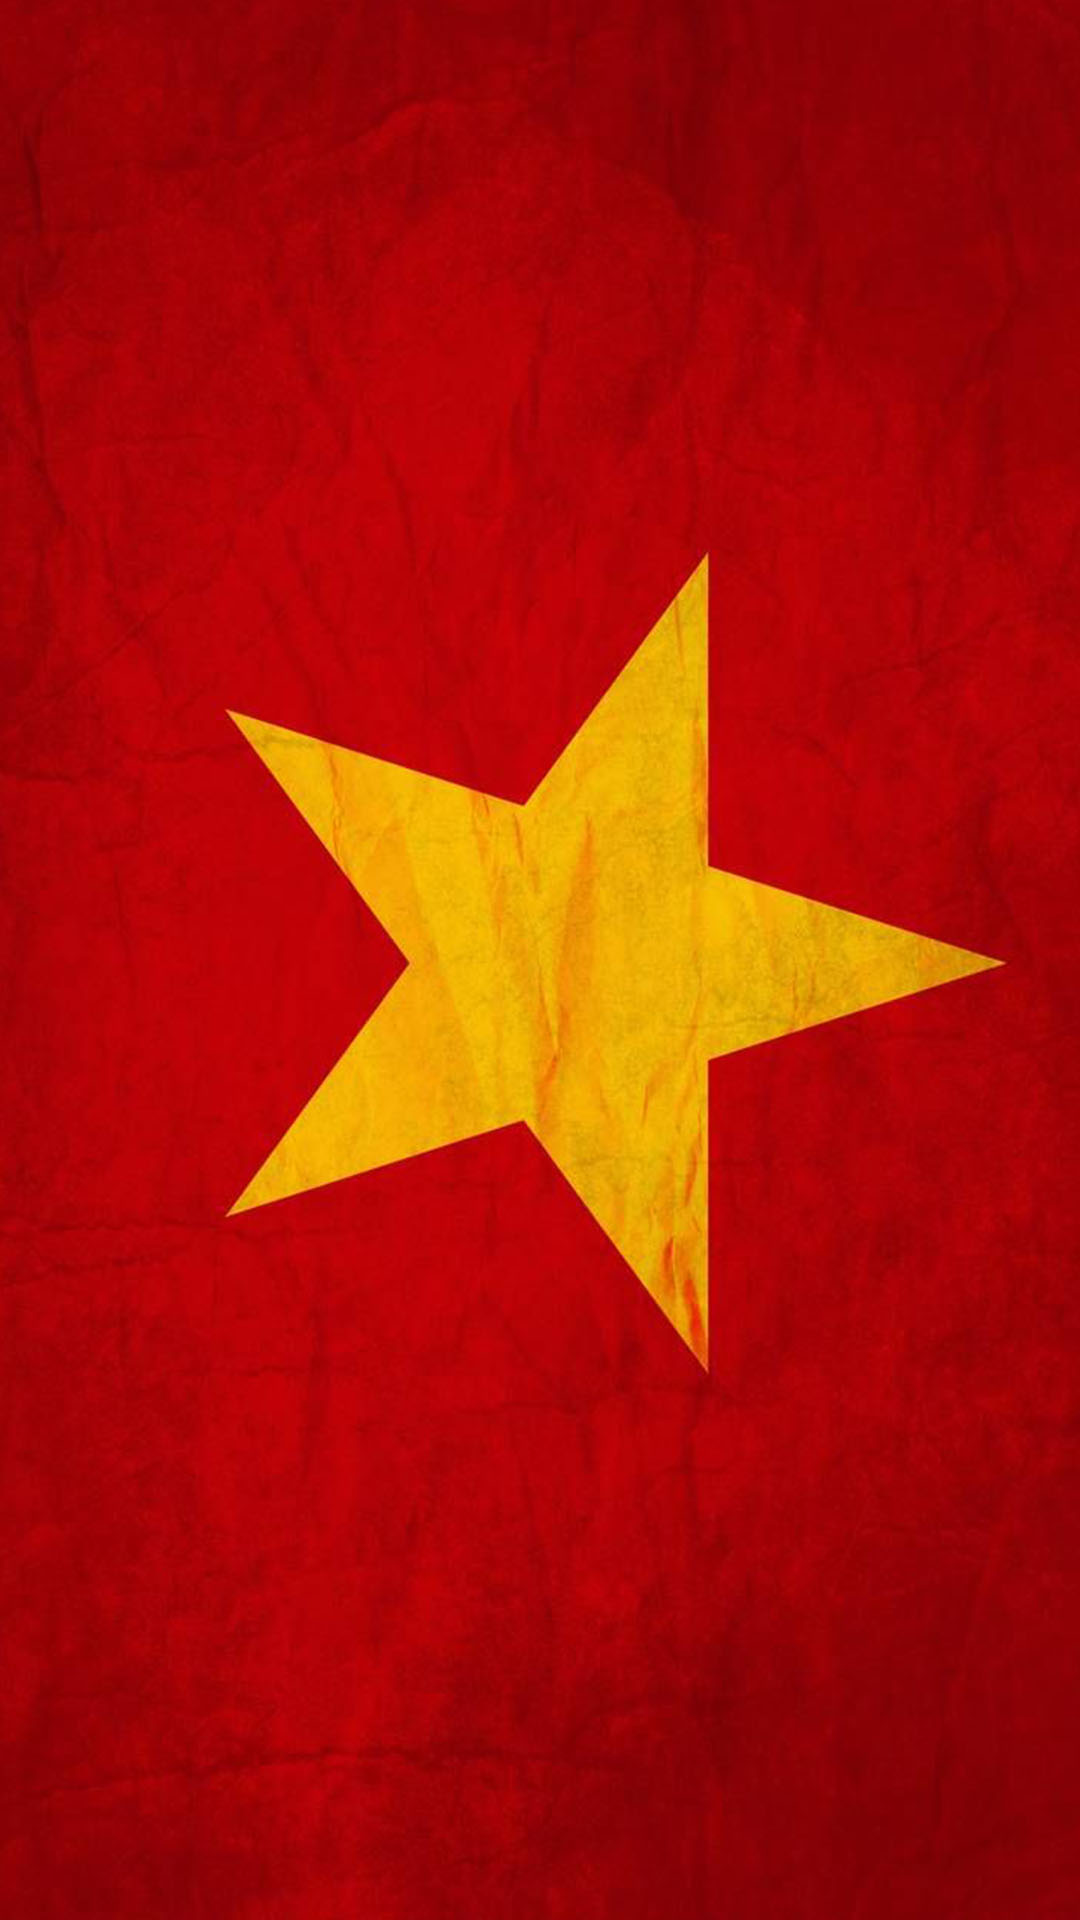 Hình nền Cờ Việt Nam: Chuyến du lịch của bạn sắp tới và bạn đang tìm kiếm một hình nền đẹp mắt liên quan đến quốc gia Việt Nam? Hãy truy cập hình nền Cờ Việt Nam để cảm nhận sự kiêu hãnh và tự hào về đất nước. Sự kết hợp hoàn hảo giữa màu đỏ và sao vàng sẽ khiến bạn cảm thấy sống động và tự tin hơn trong mỗi chuyến đi của mình.